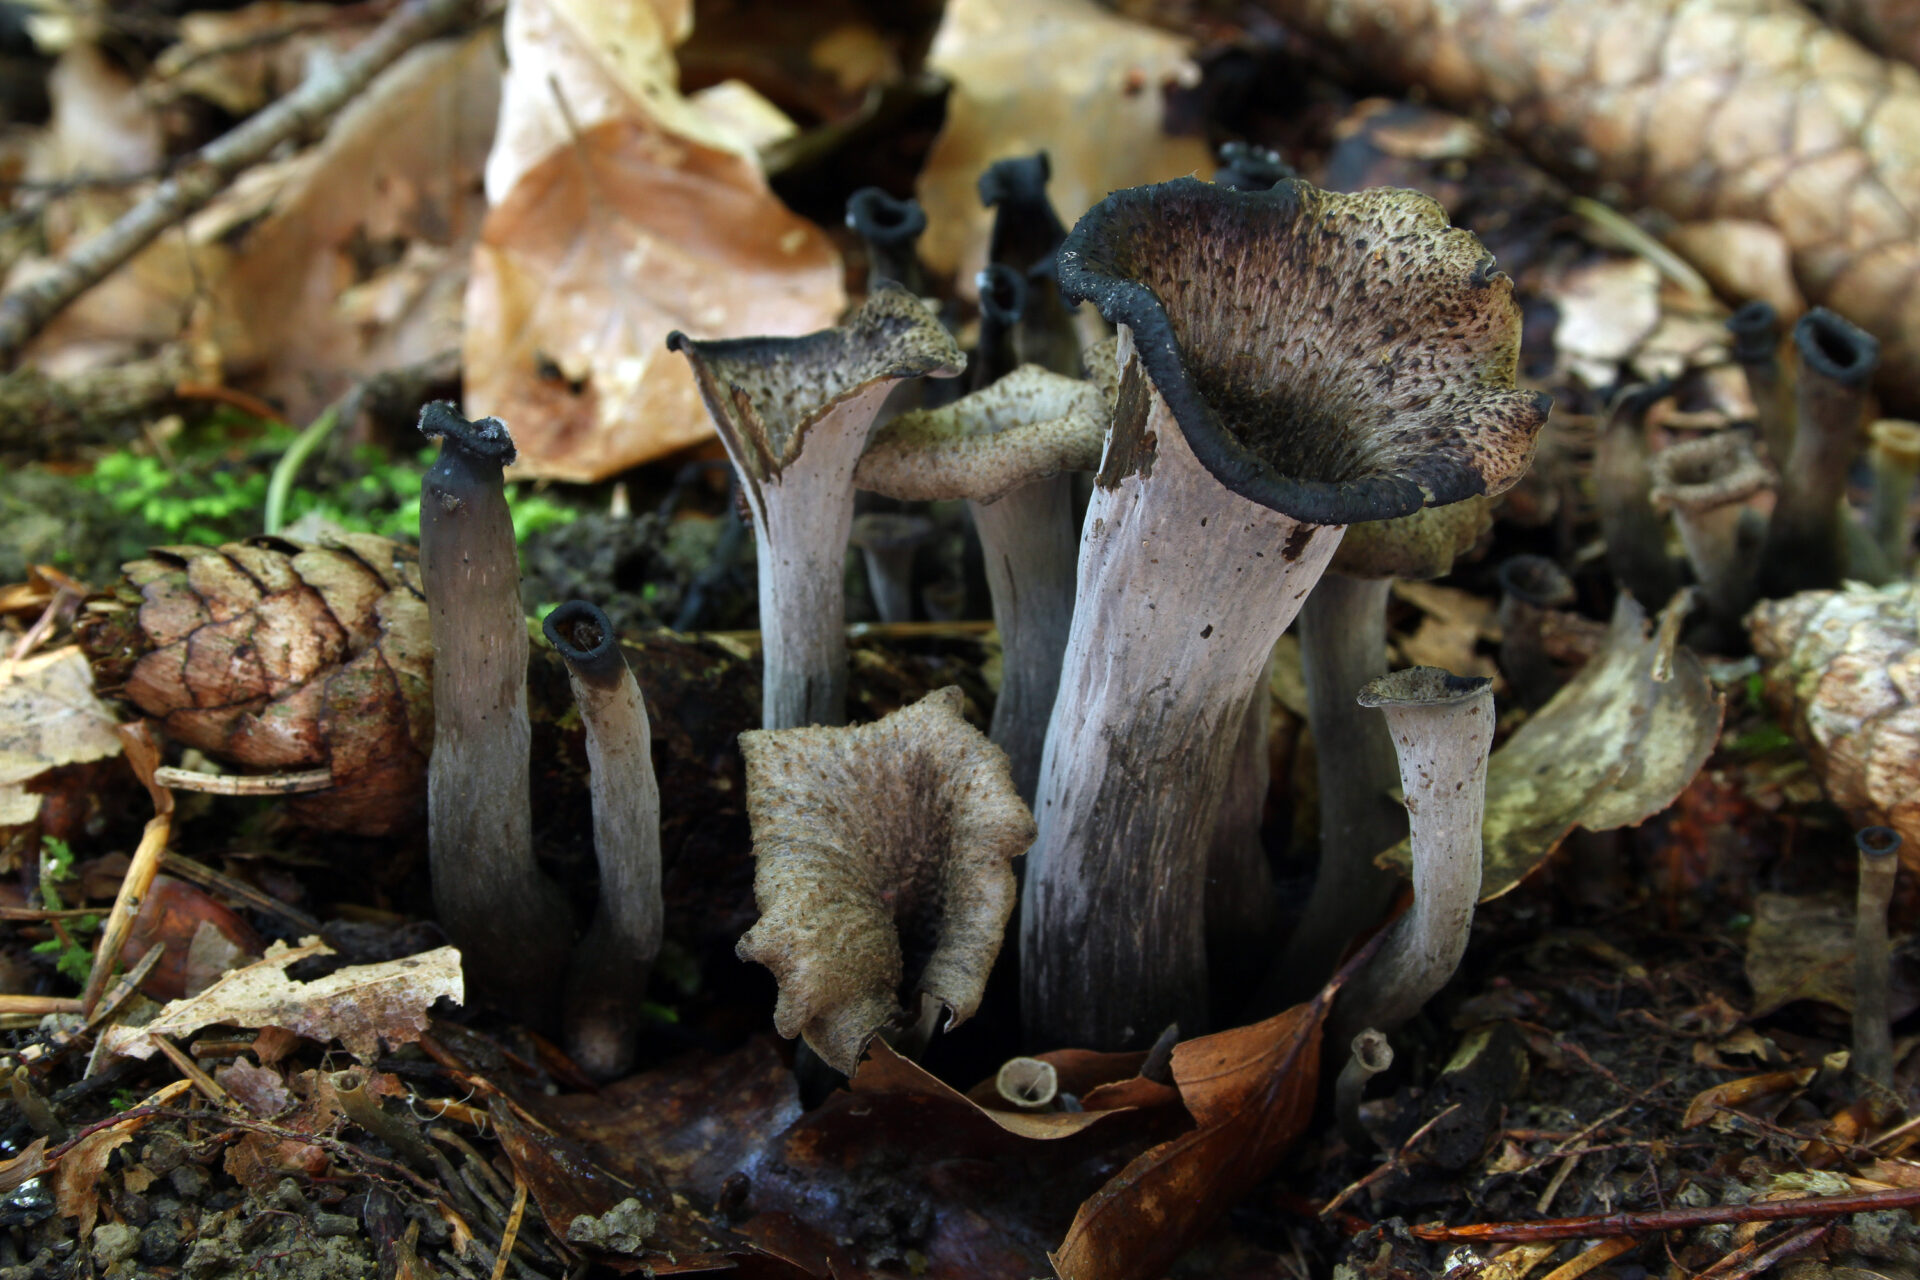 edible mushrooms uk